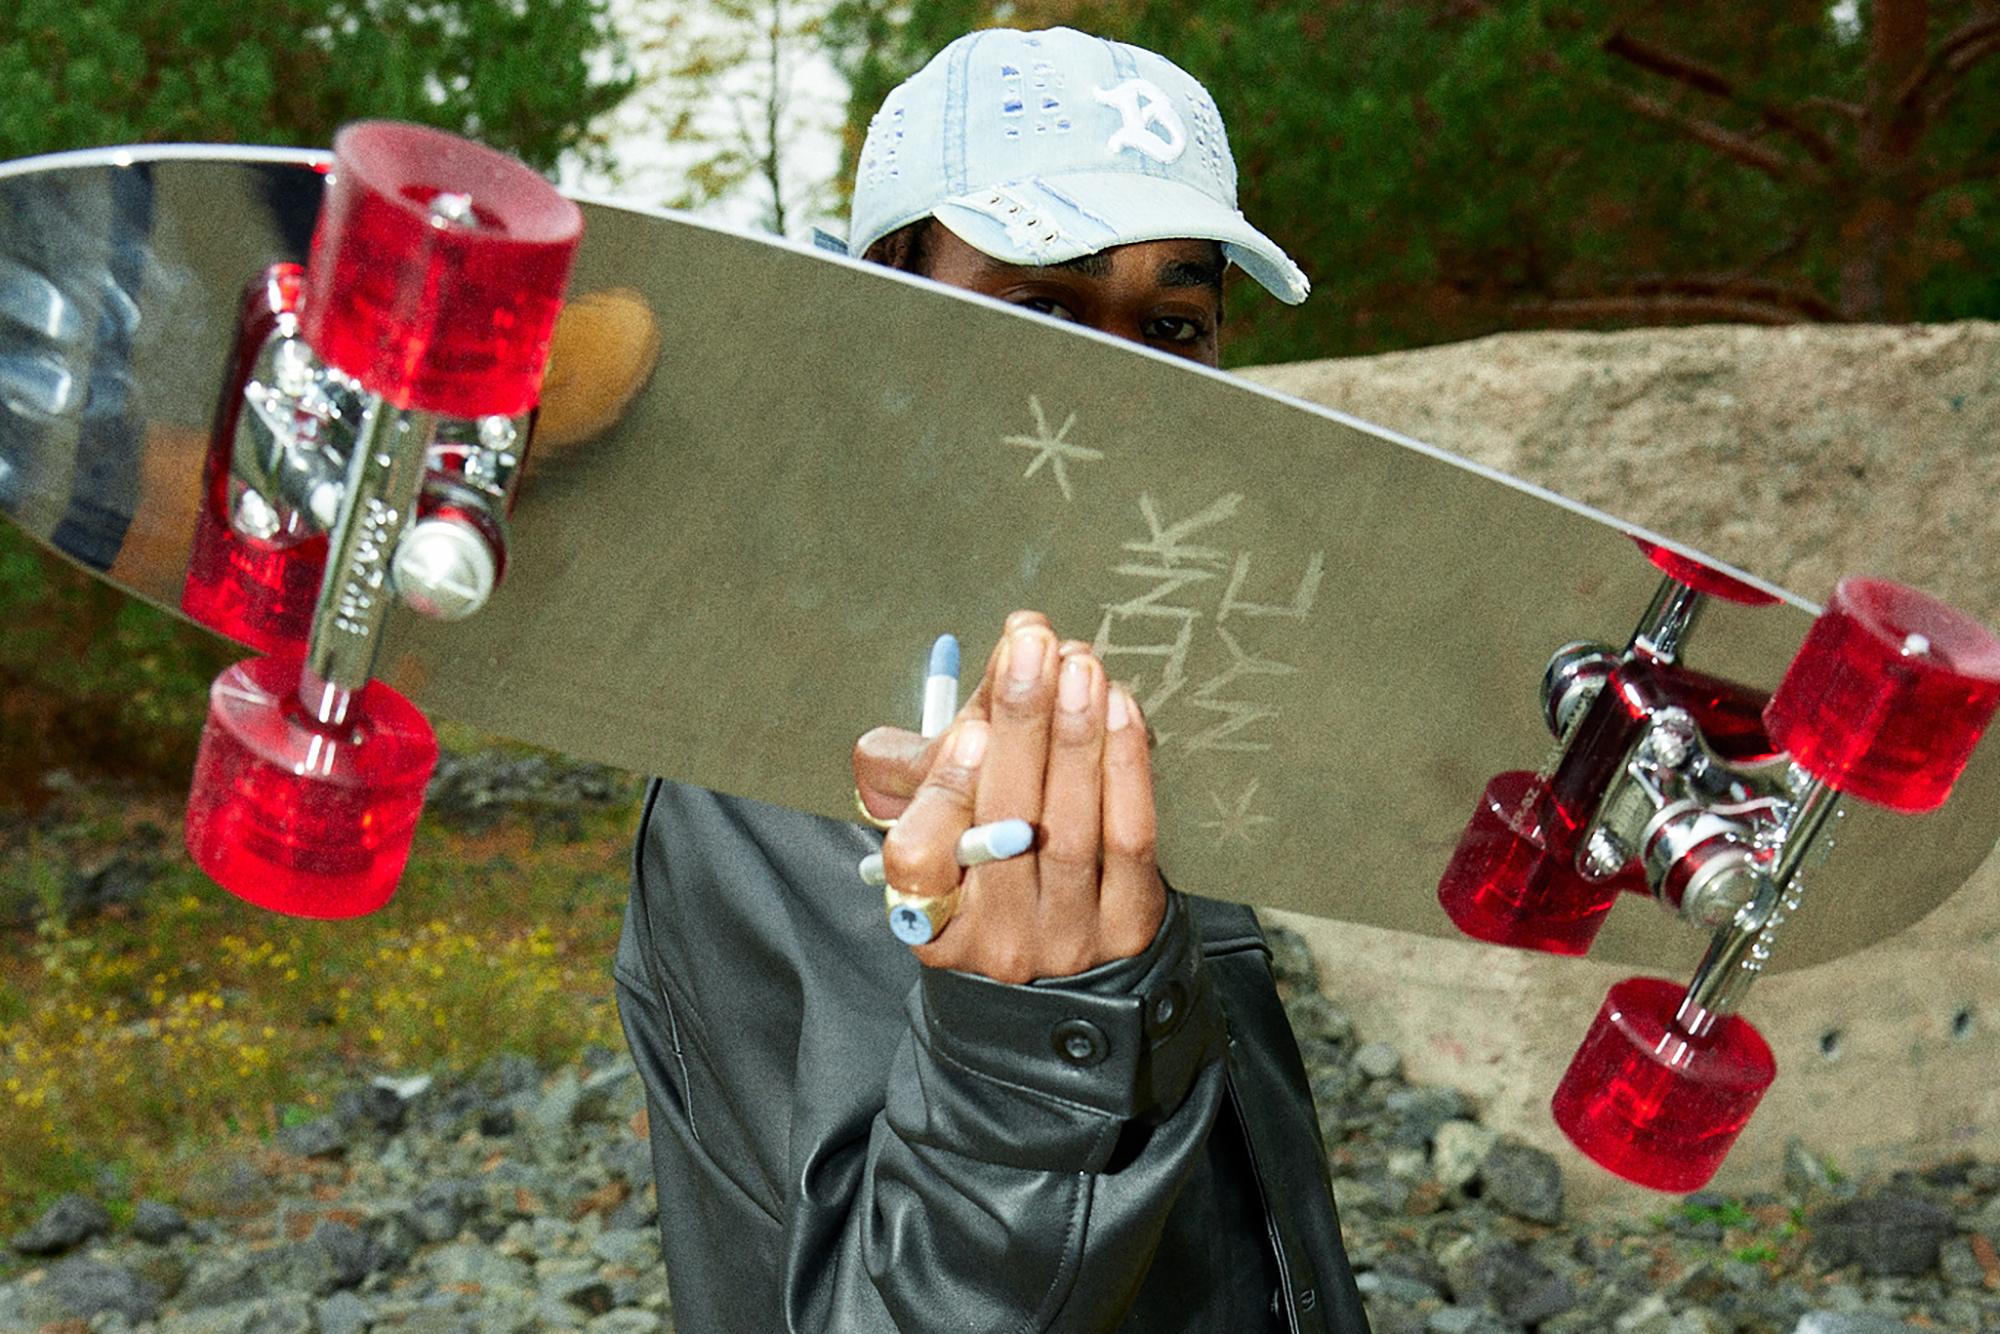 Krink and Banzai's Skateboard